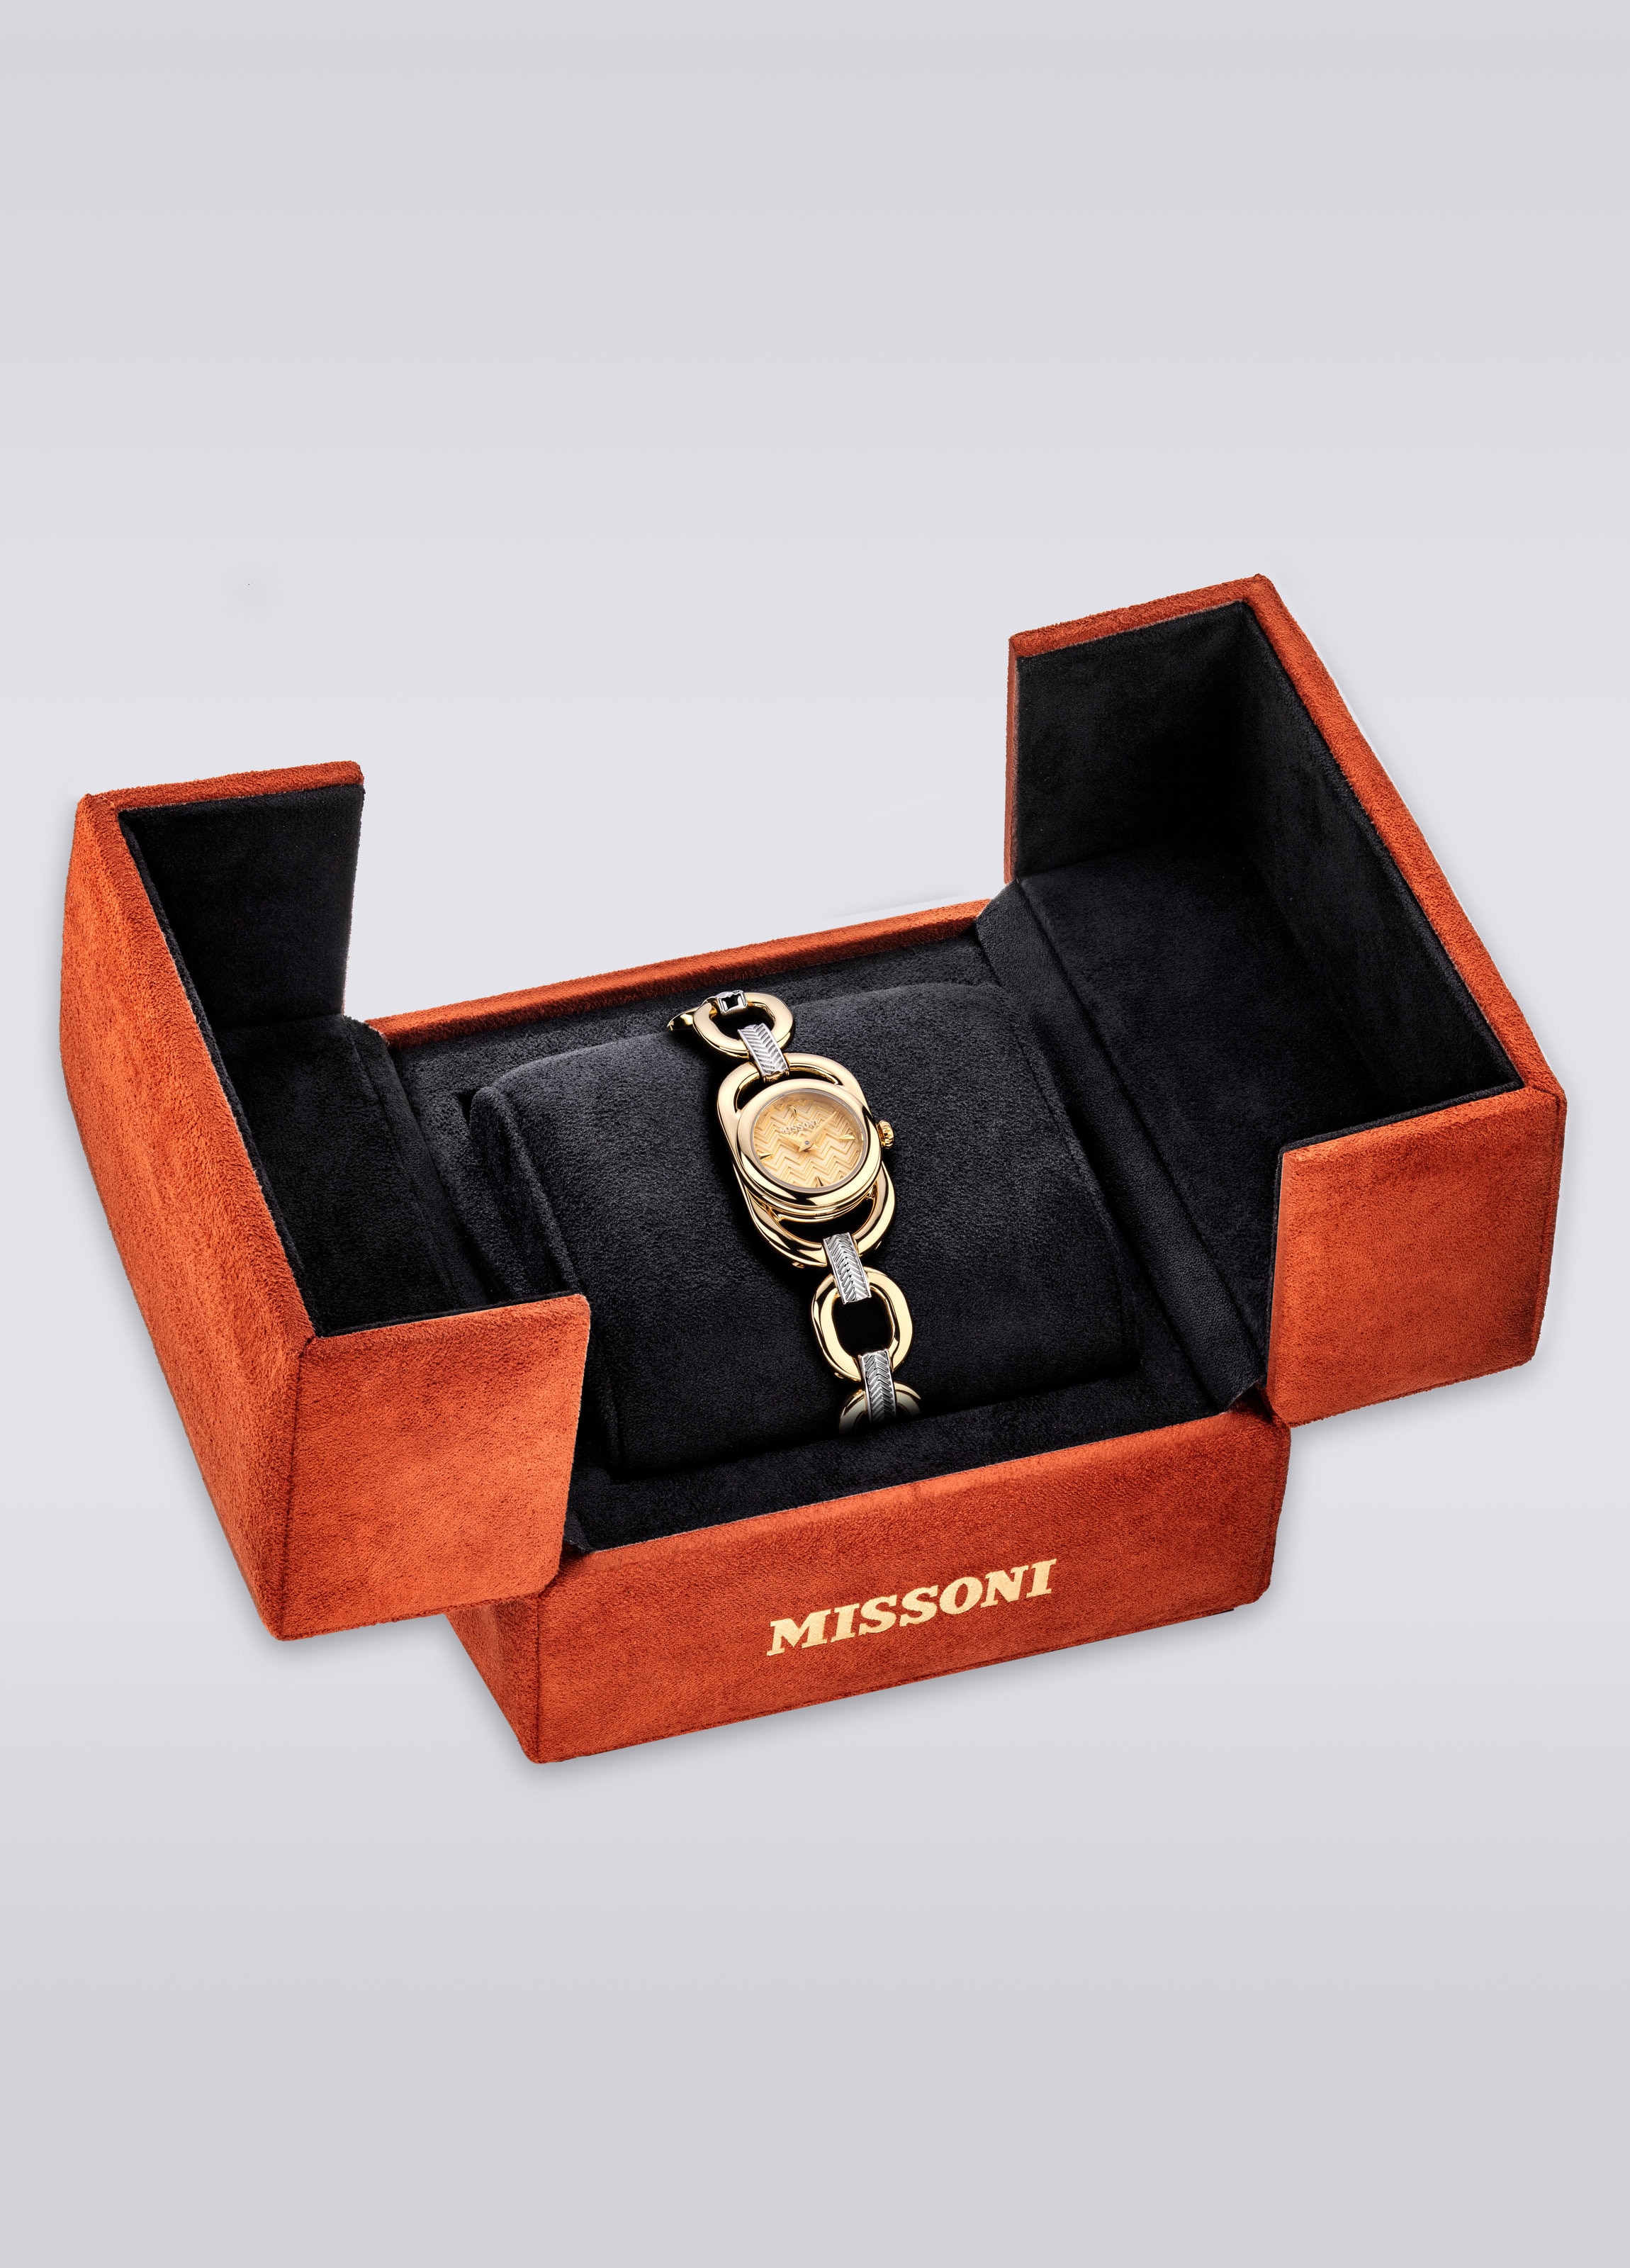 Missoni Gioiello Chain 22,8 MM case size watch, Multicoloured  - 4